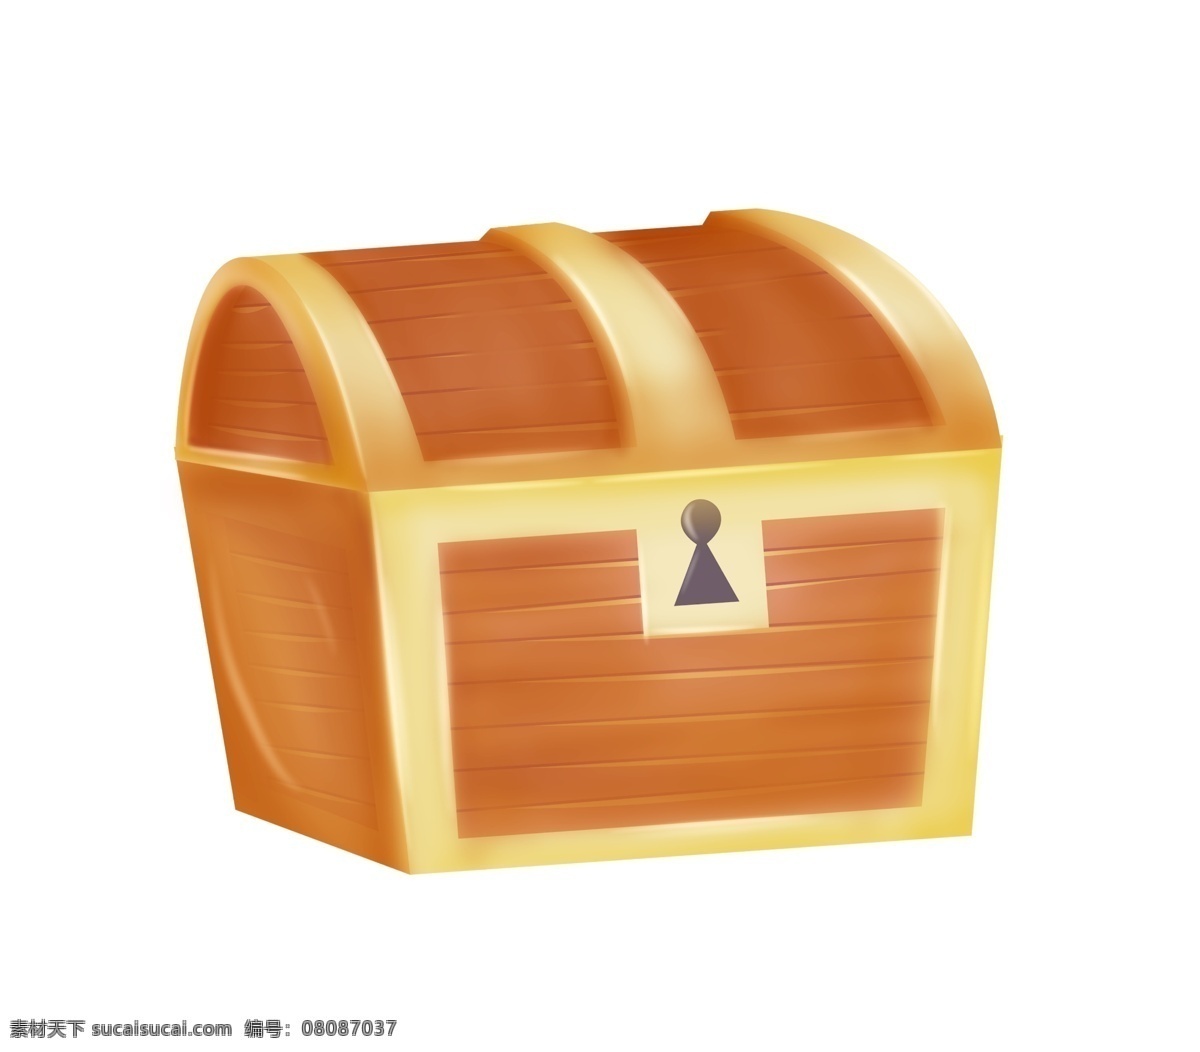 棕 黄色 精美 宝 箱 插图 时尚宝箱 创意宝箱 棕色宝箱 立体宝箱 精美的宝箱 宝箱插画 宝箱装饰 金融宝箱